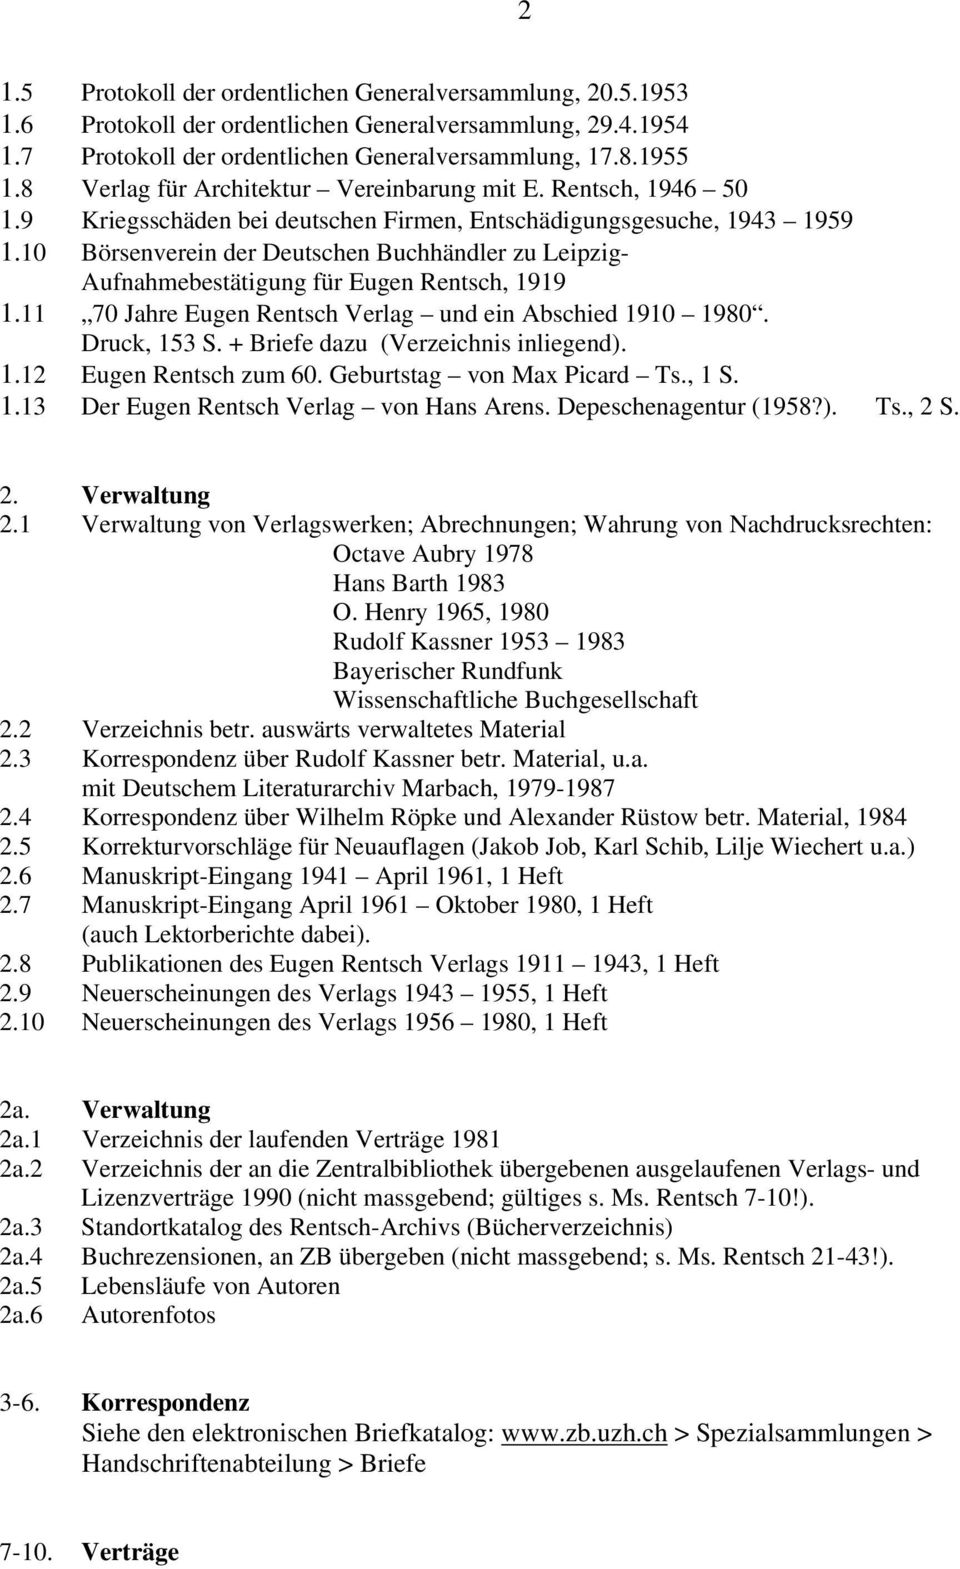 10 Börsenverein der Deutschen Buchhändler zu Leipzig- Aufnahmebestätigung für Eugen Rentsch, 1919 1.11 70 Jahre Eugen Rentsch Verlag und ein Abschied 1910 1980. Druck, 153 S.